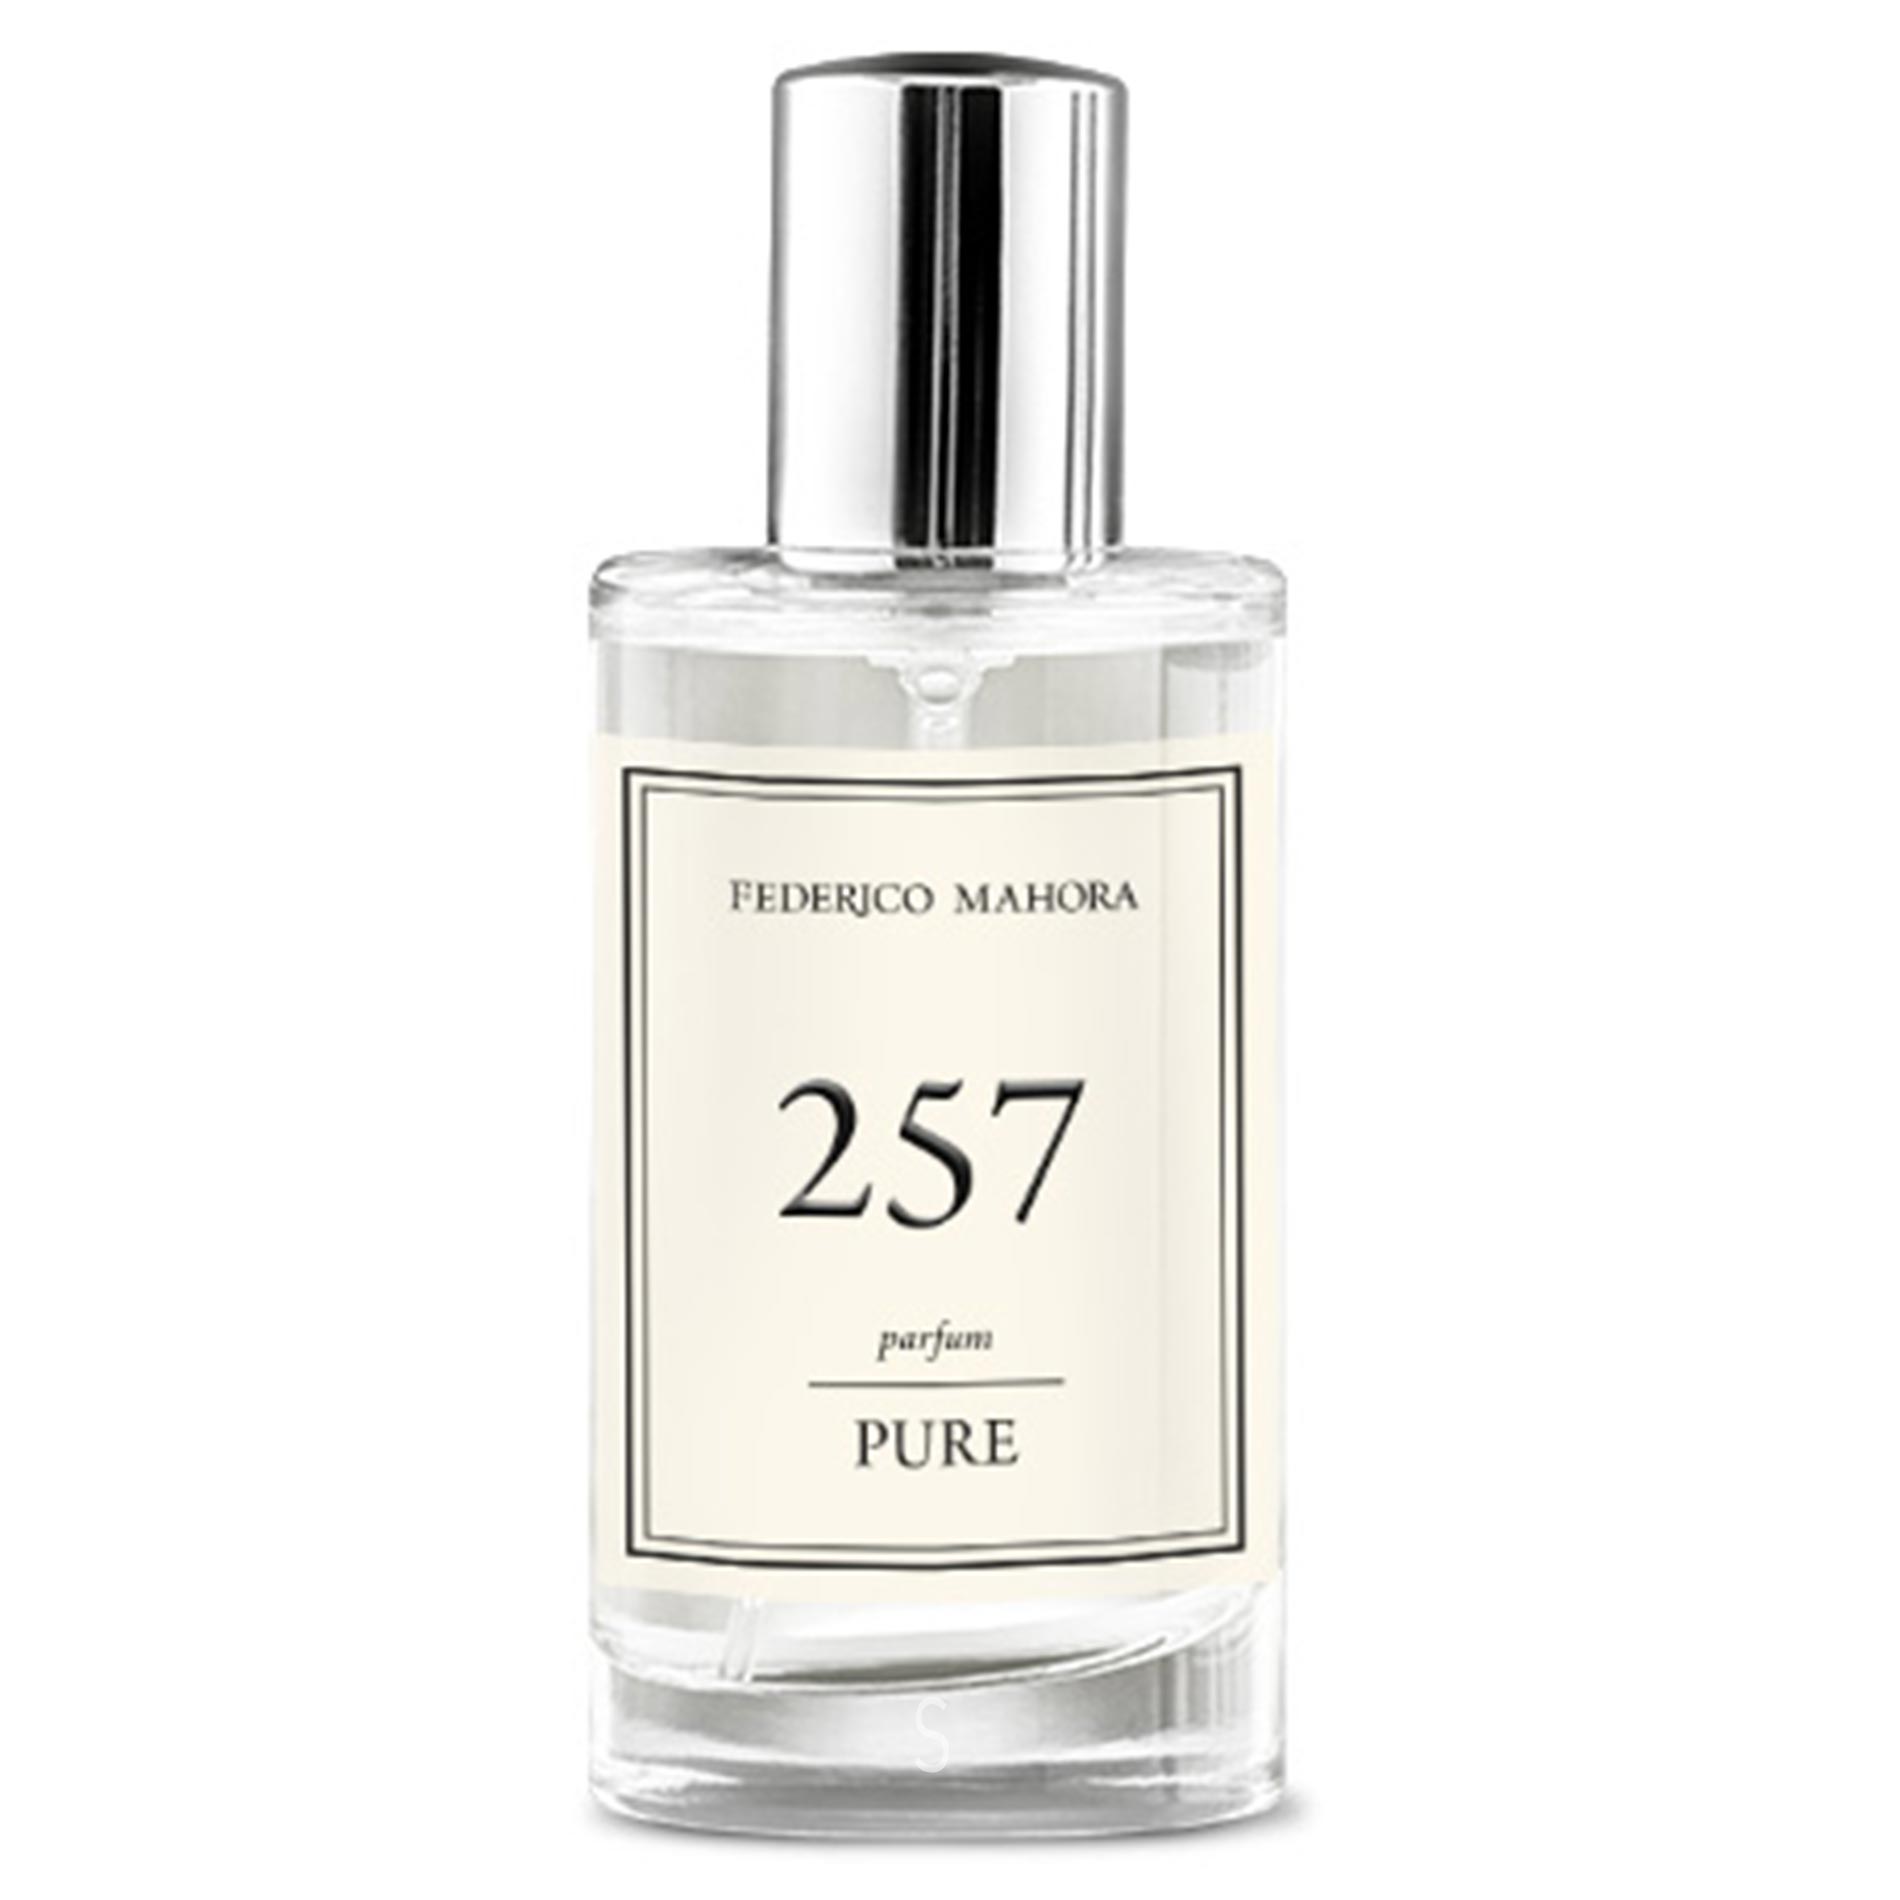 PURE 257 Parfum Federico Mahora